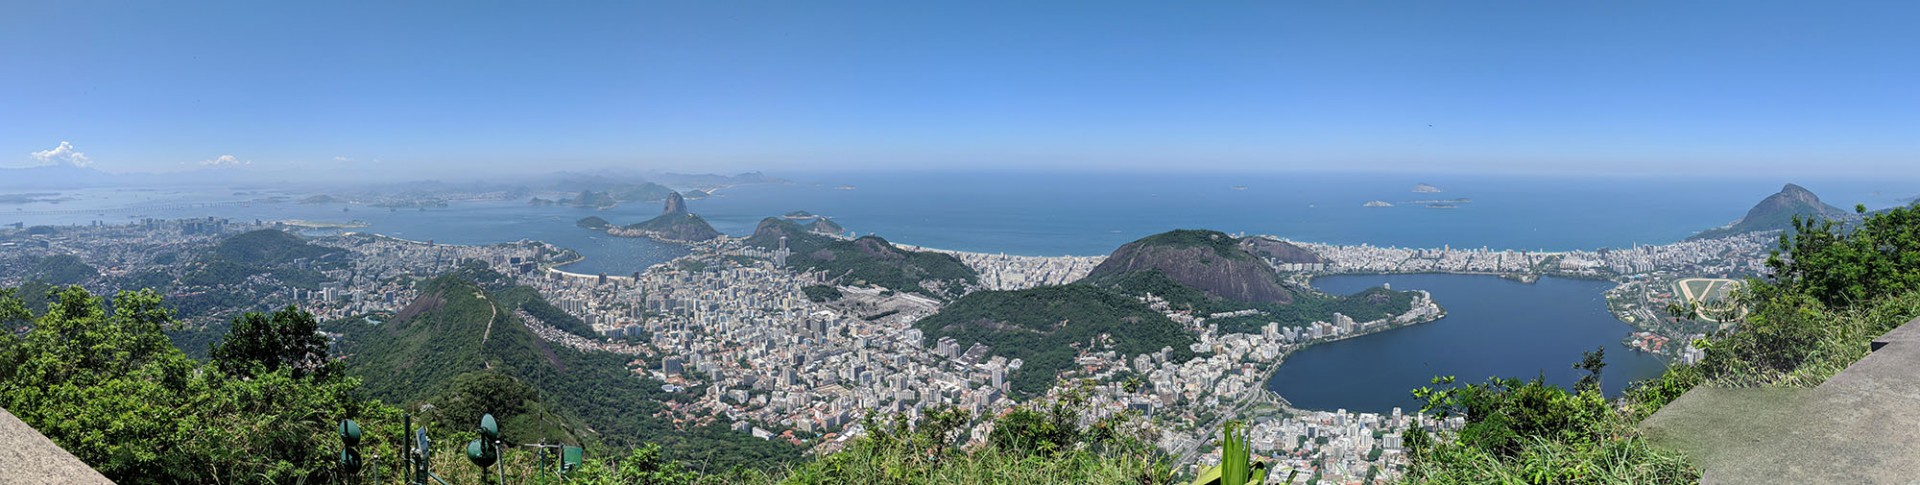 Rio De Janeiro shot